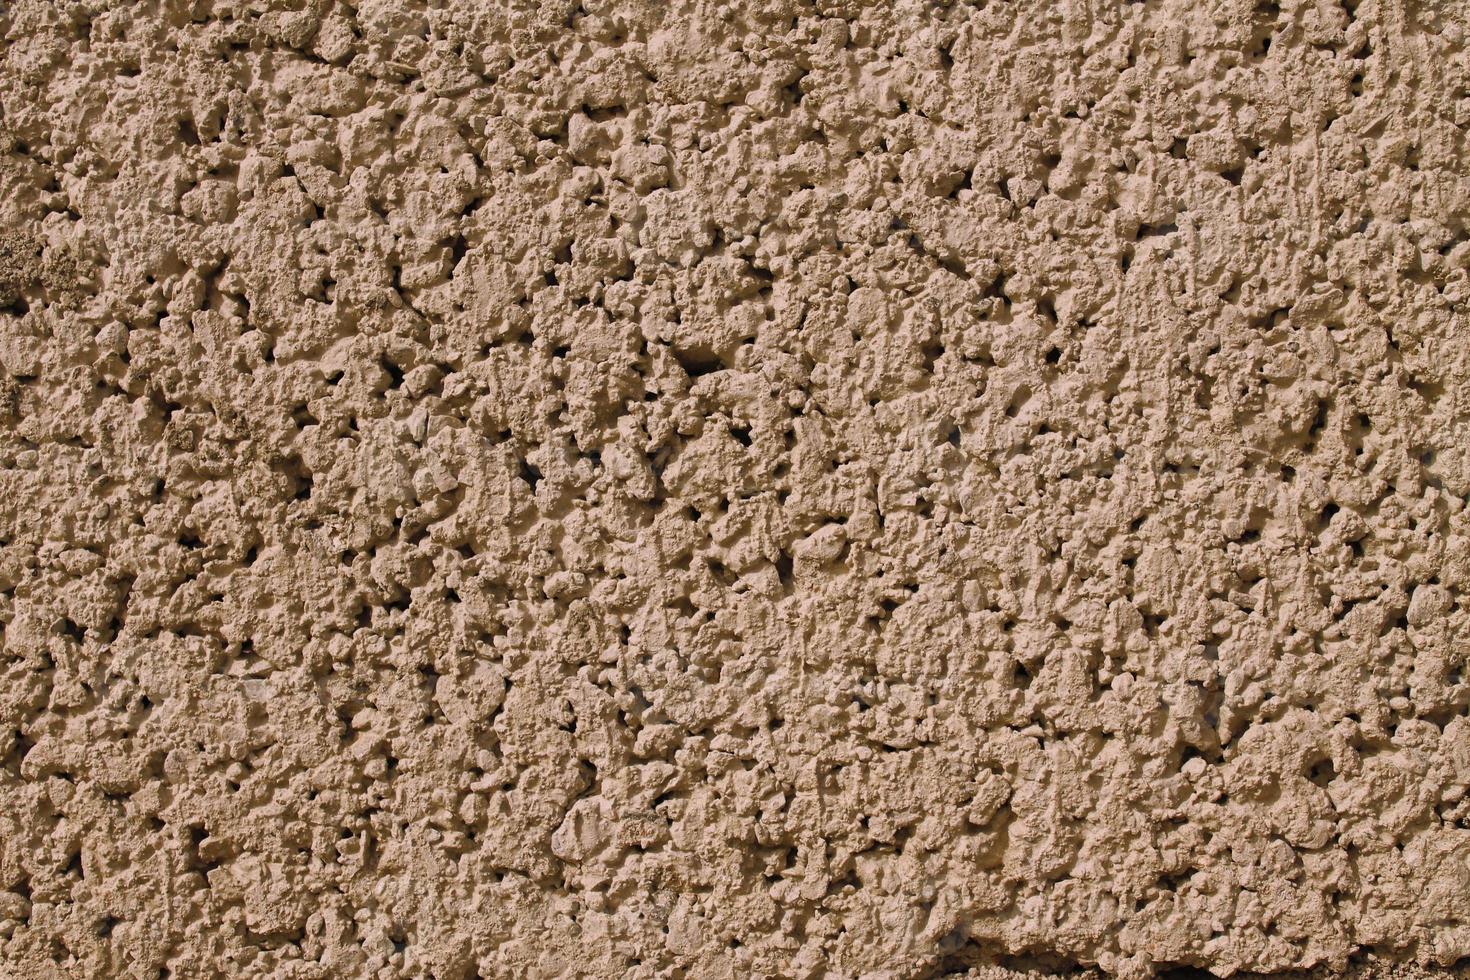 textura de parede de blocos de concreto foto